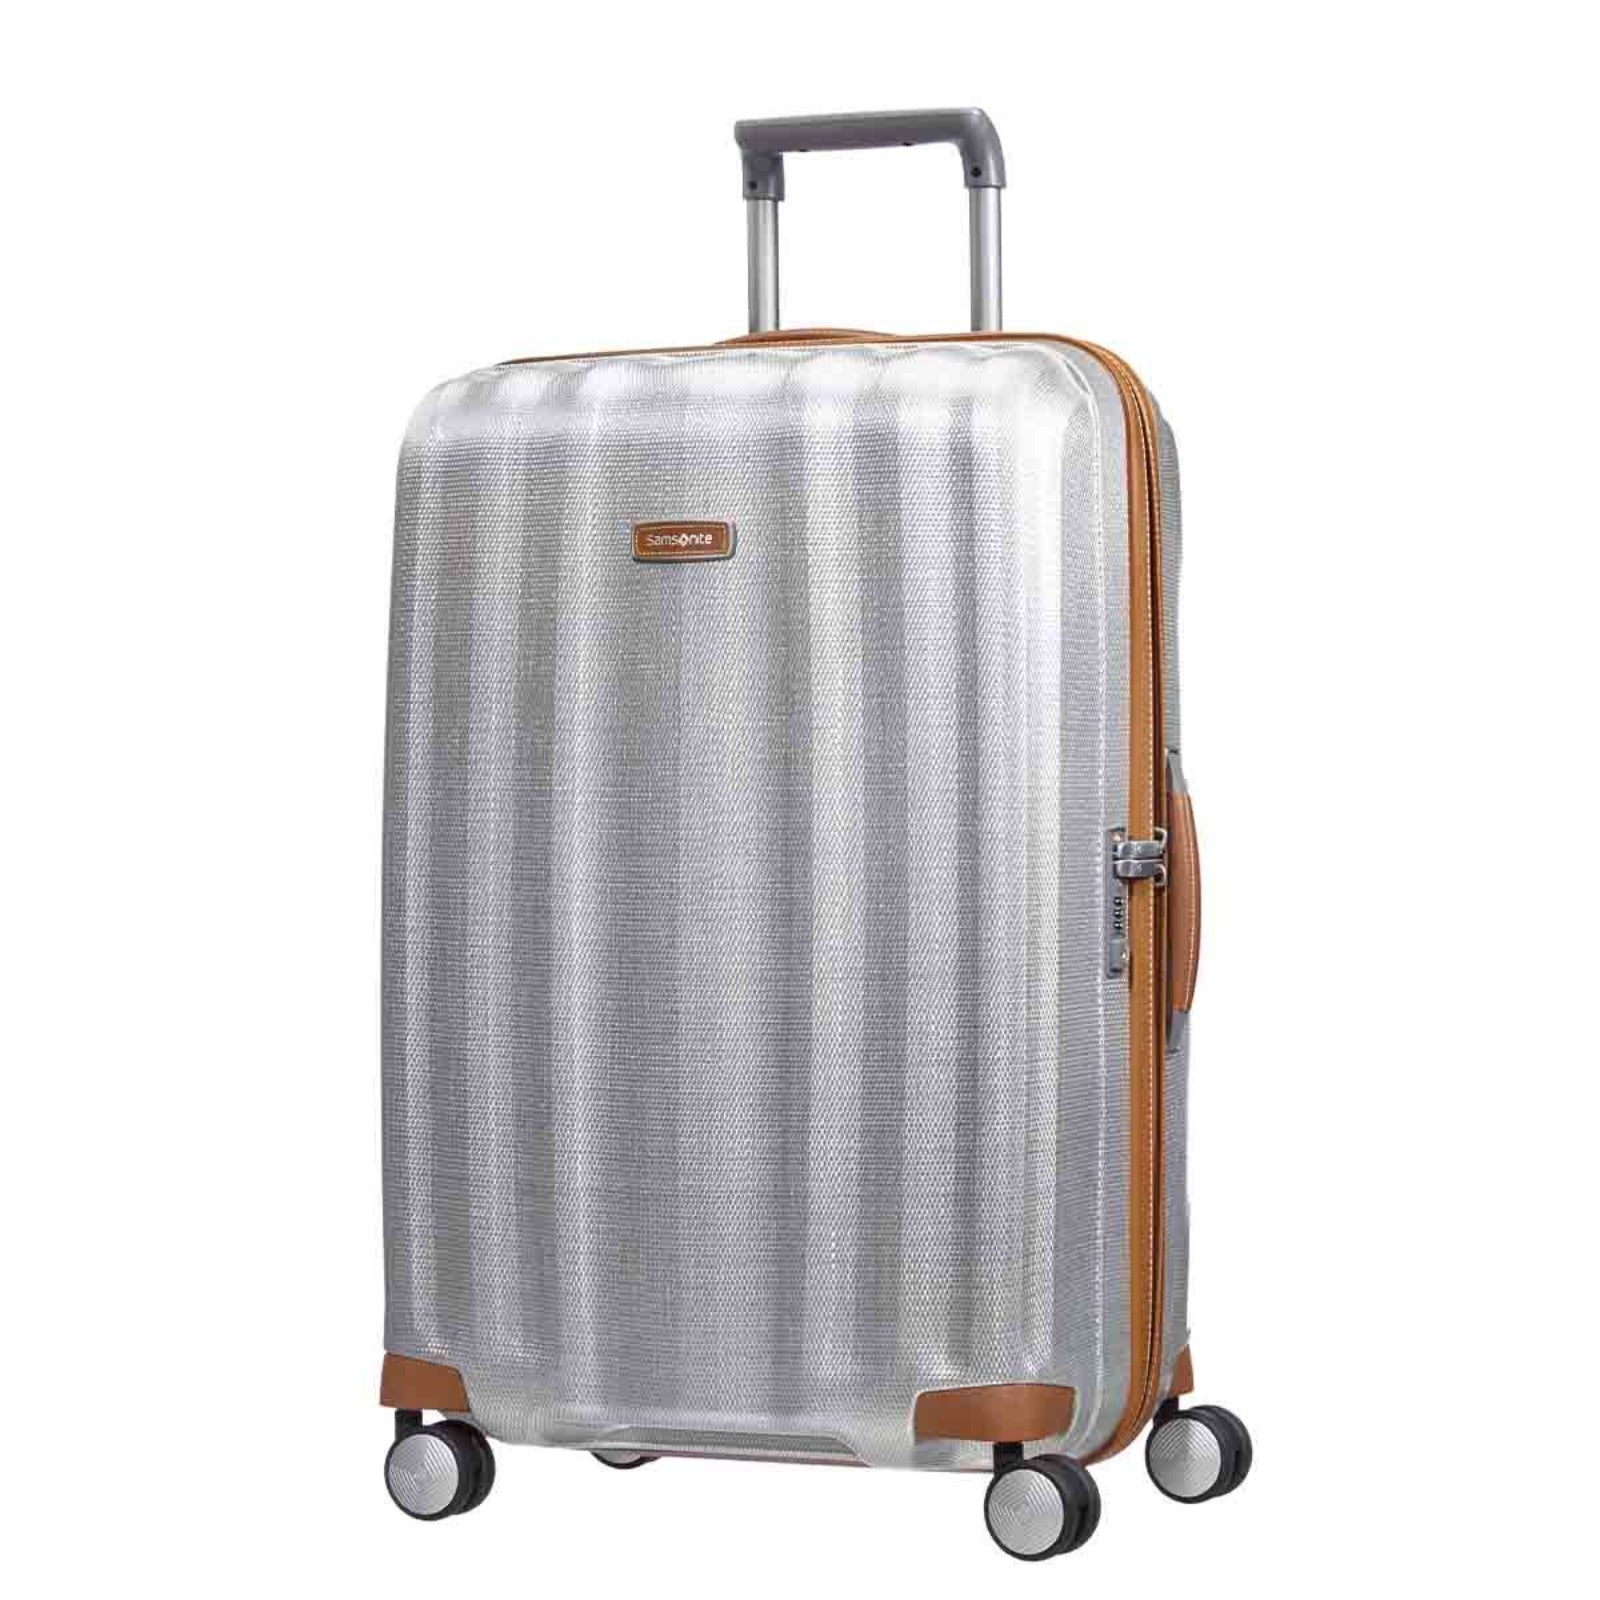 Samsonite_Lite-Cube_Deluxe_76cm_Suitcase_Aluminium_Front